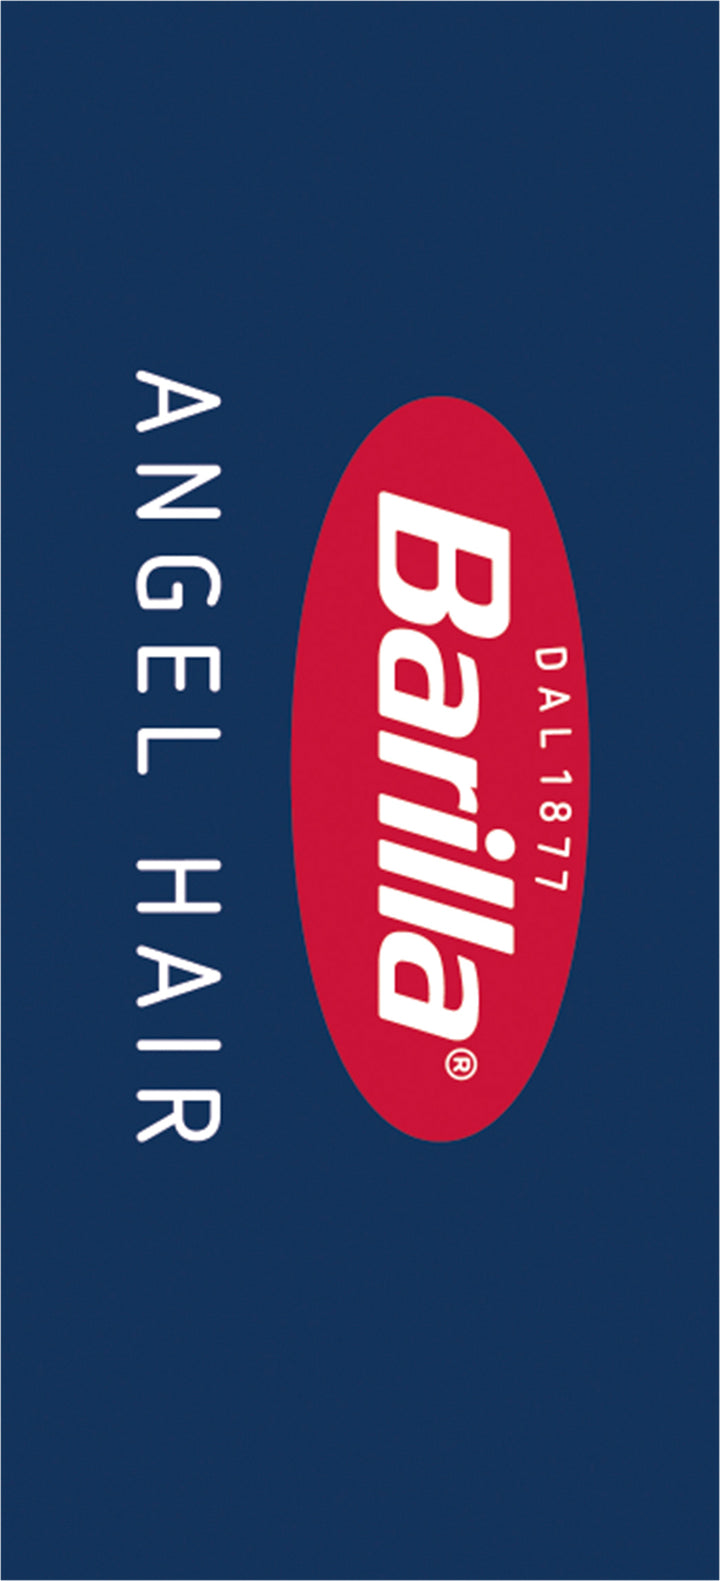 Barilla Angel Hair Capellini Pasta-16 oz.-20/Case